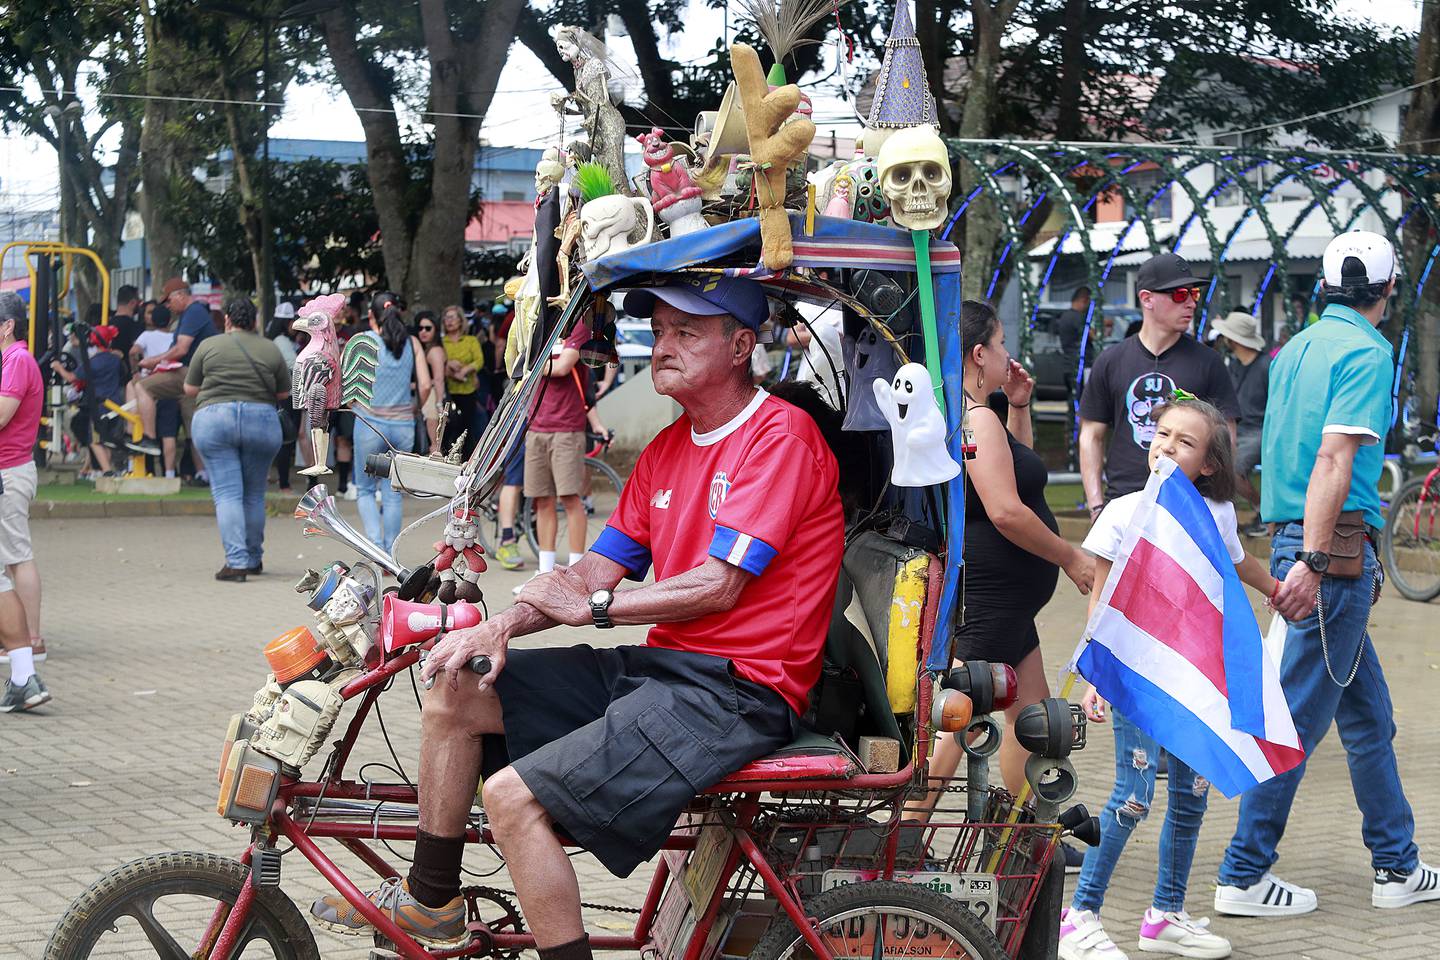 Dagoberto Solano es el dueño de una colorida bicicleta, a la que llama "Betty la fea".